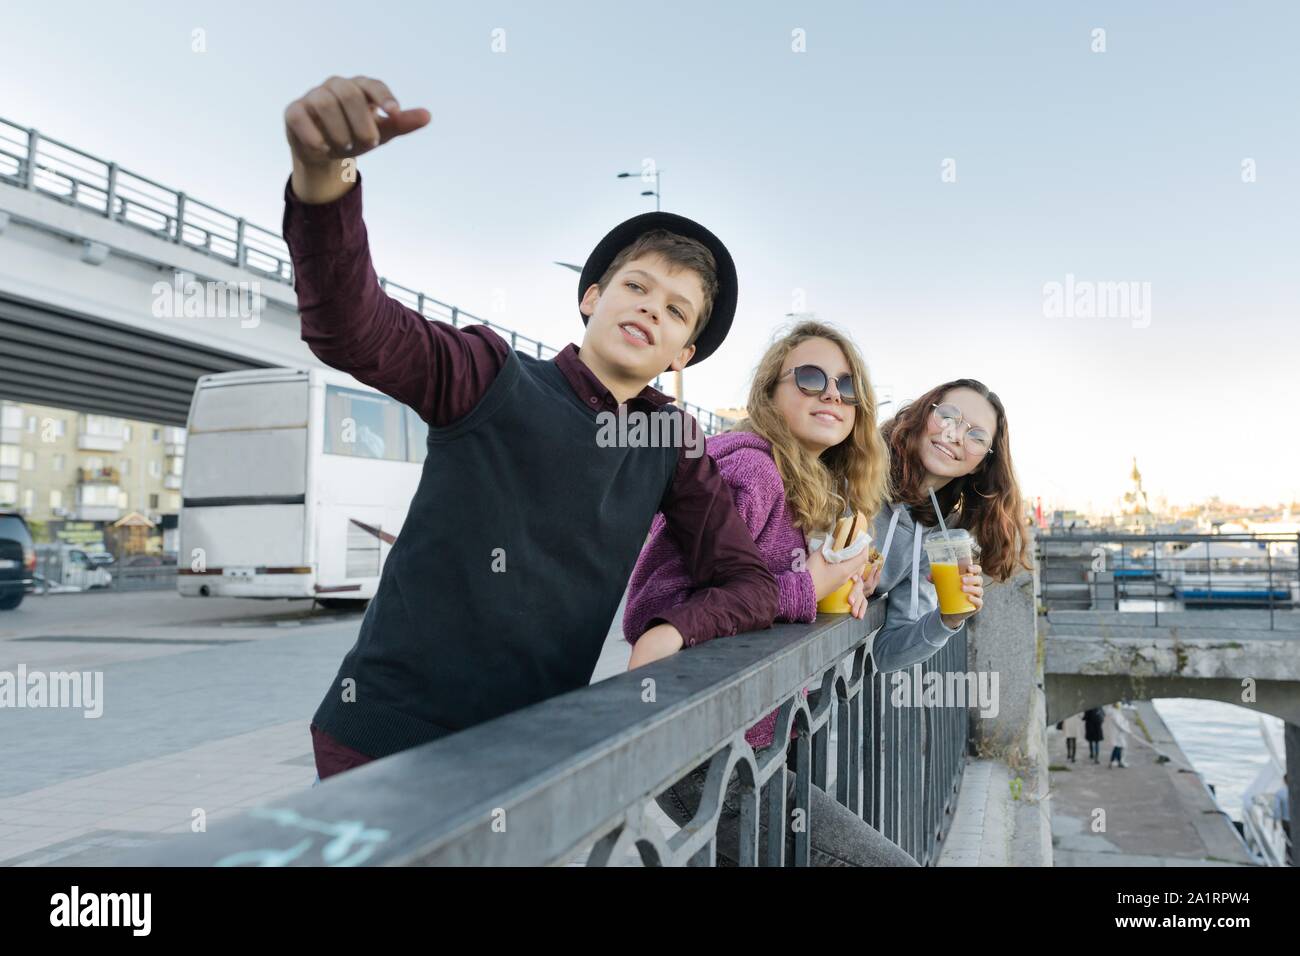 Jugendliche Jungen und zwei Mädchen mit Street Food sprechen Outdoor. Stockfoto